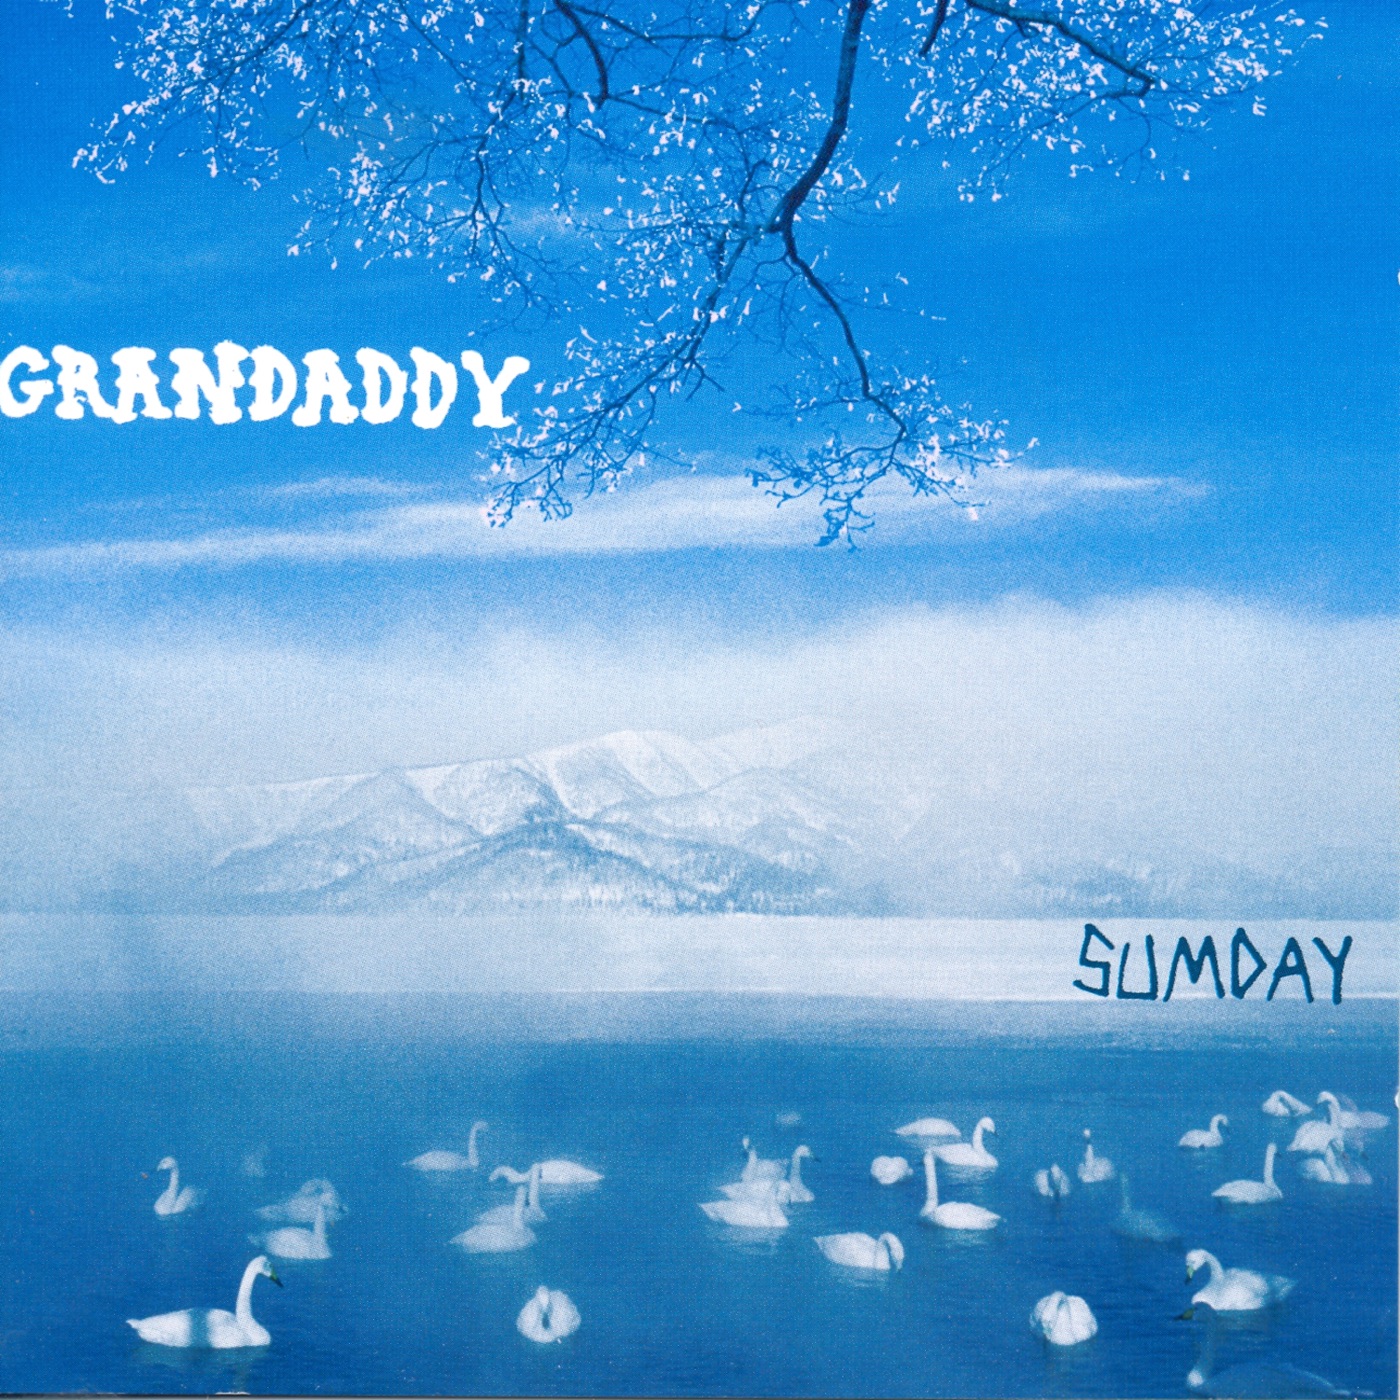 Sumday by Grandaddy